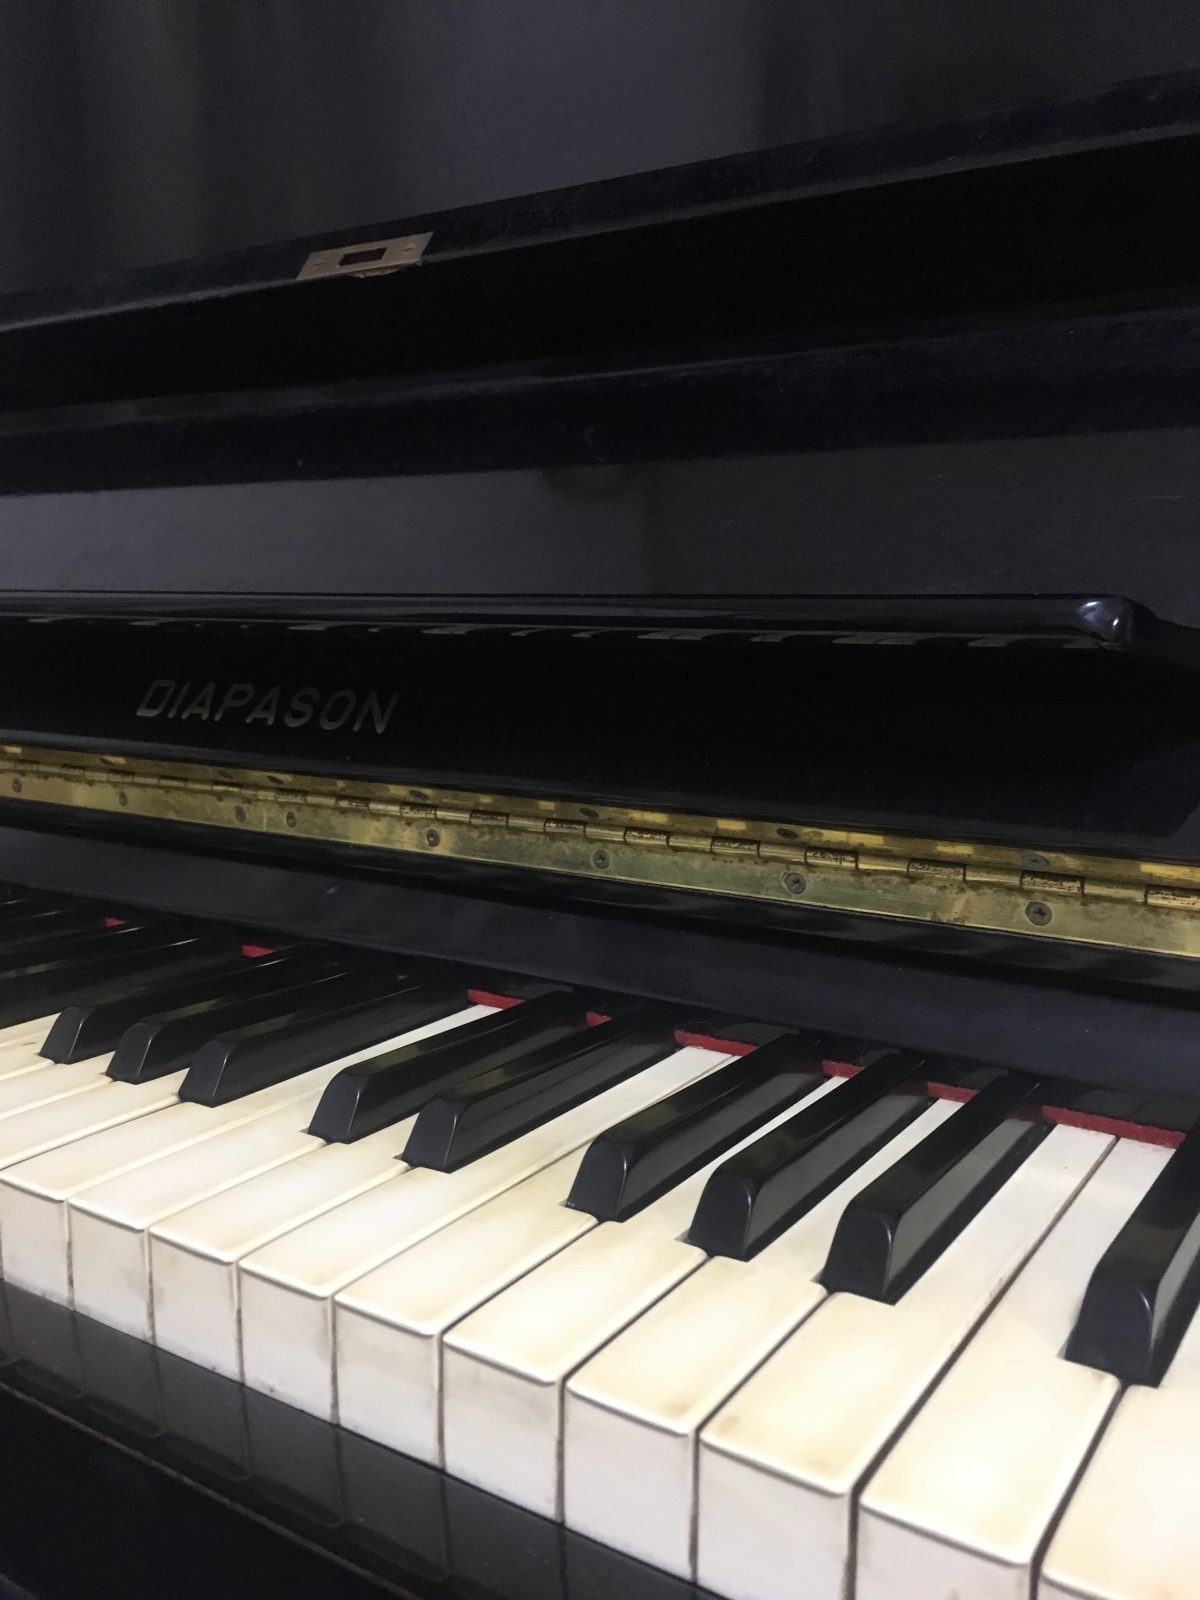 ピアノの調律と人の耳が認識できる音域の話